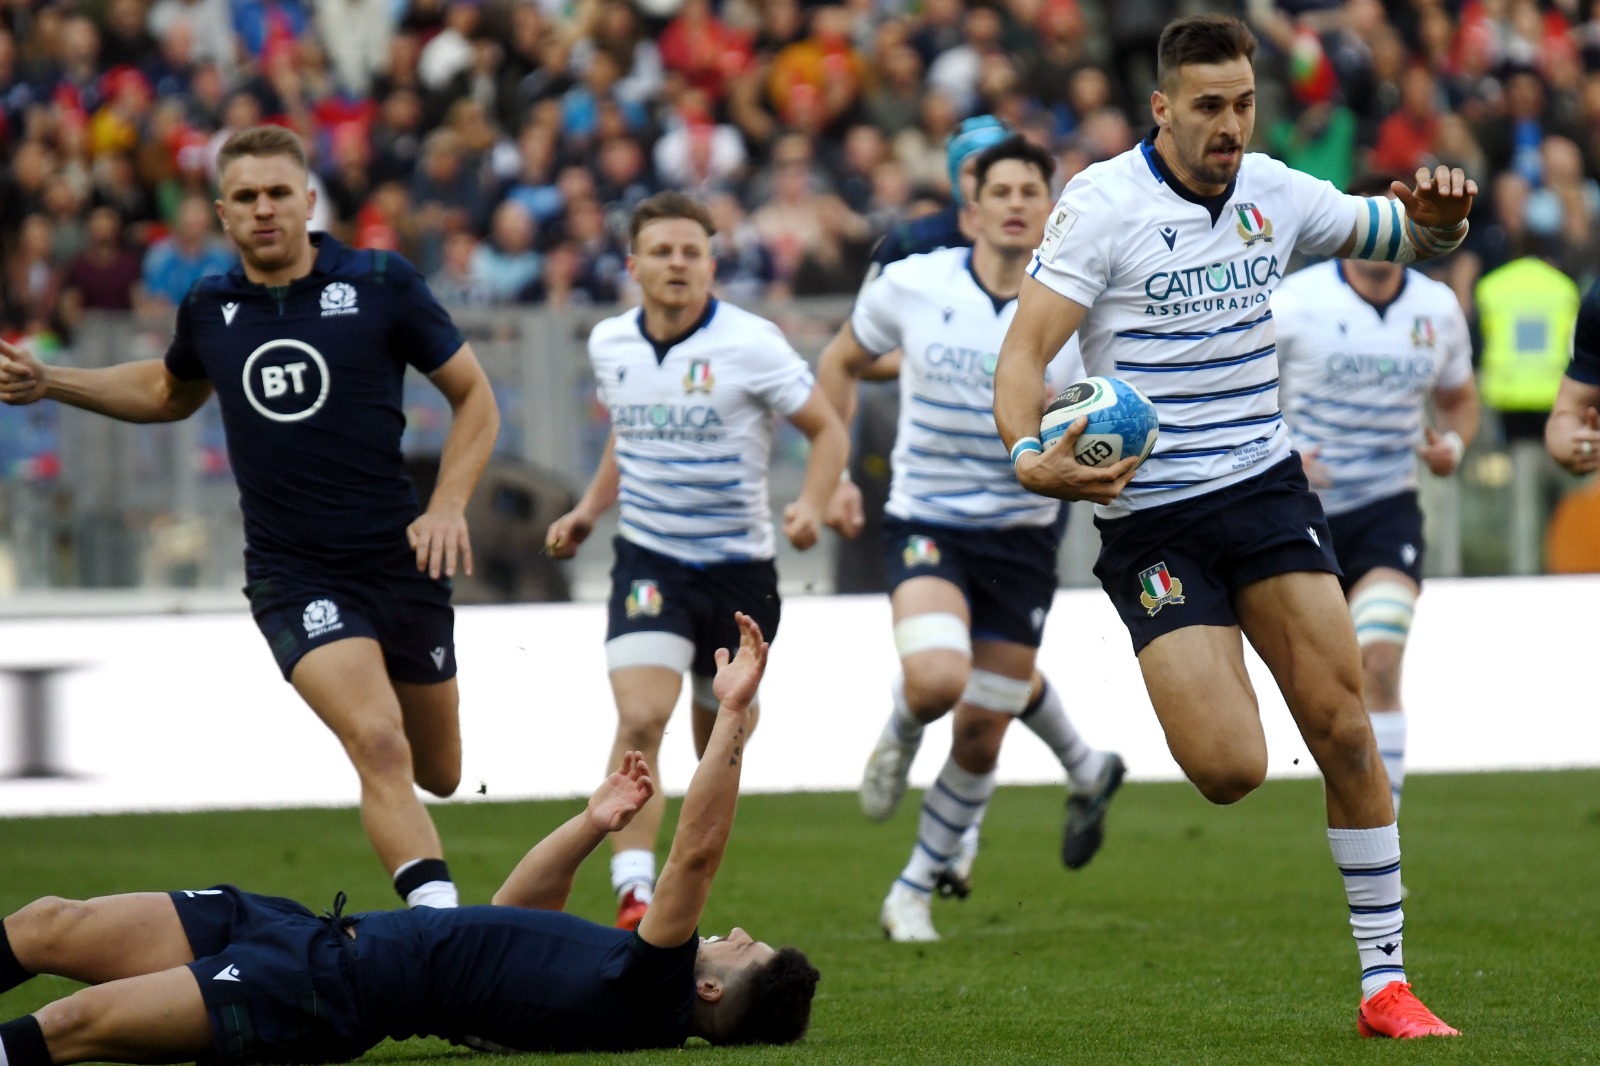 Rugby | 6 Nazioni, Italia-Scozia 0-17: terzo ko per un’Italia senza mordente (FOTOGALLERY)